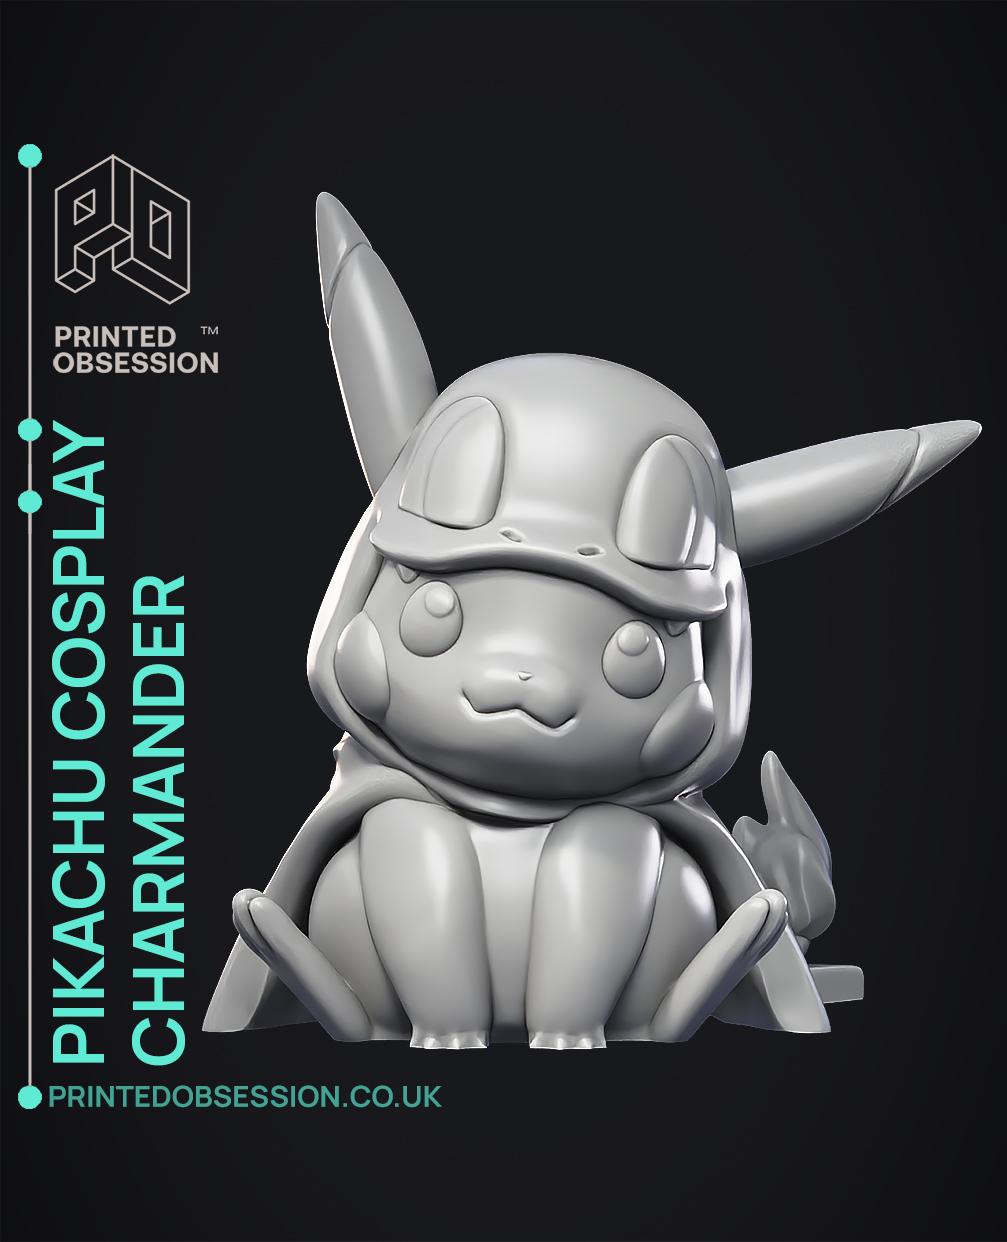 Pikachu Cosplay as Charmander - Pokémon - Fan Art 3d model